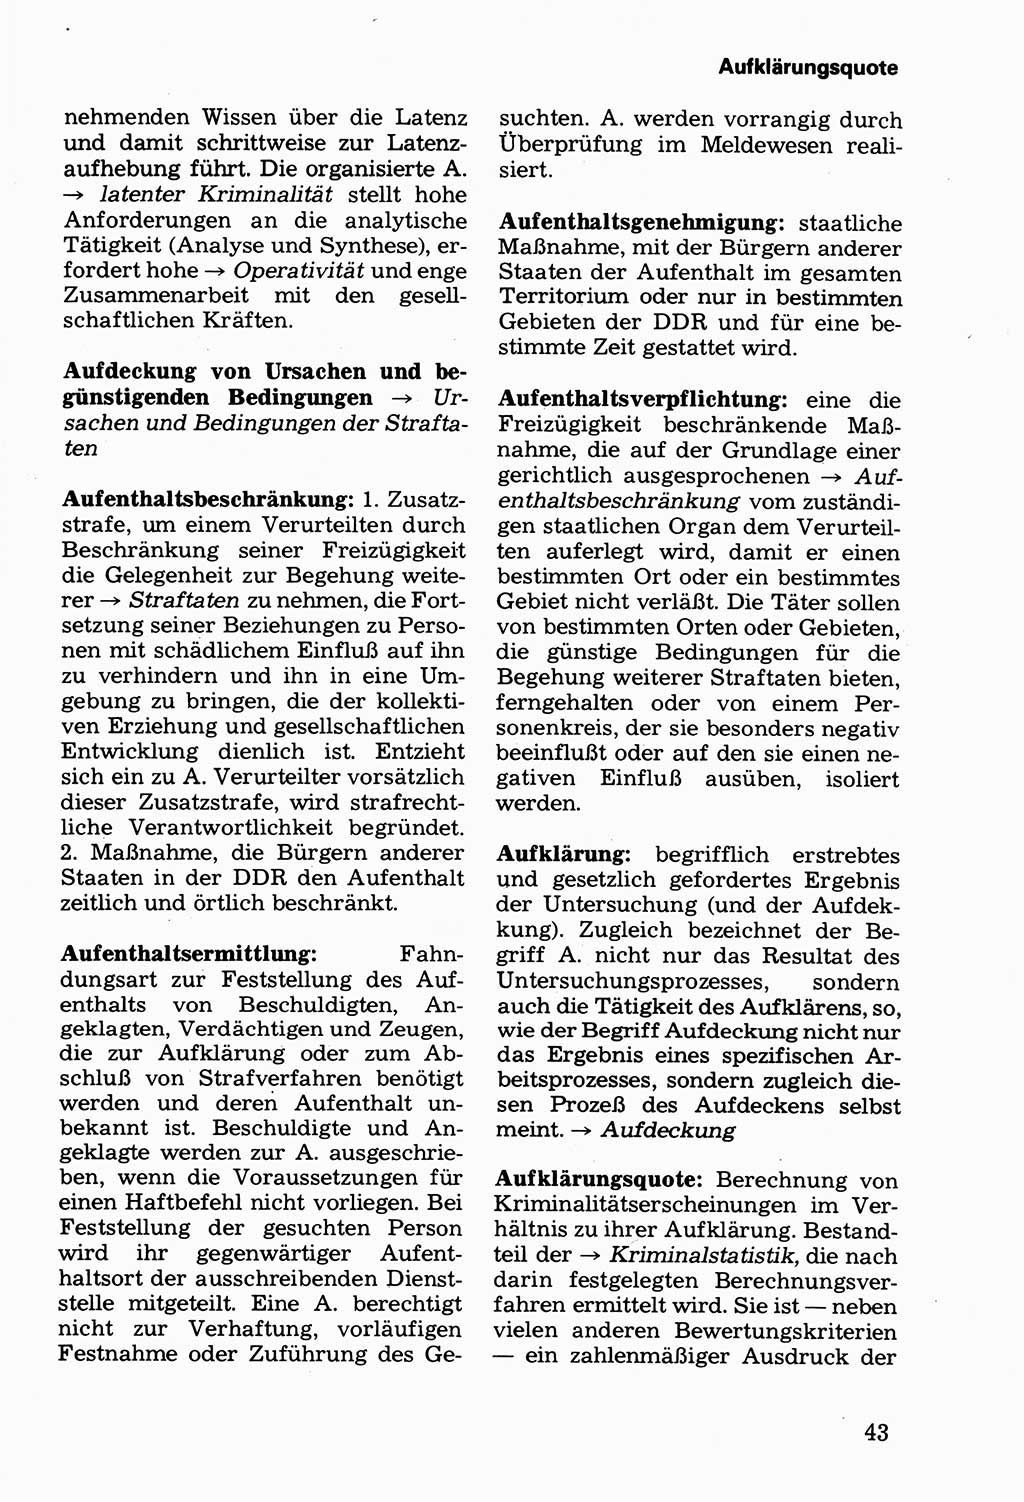 Wörterbuch der sozialistischen Kriminalistik [Deutsche Demokratische Republik (DDR)] 1981, Seite 43 (Wb. soz. Krim. DDR 1981, S. 43)